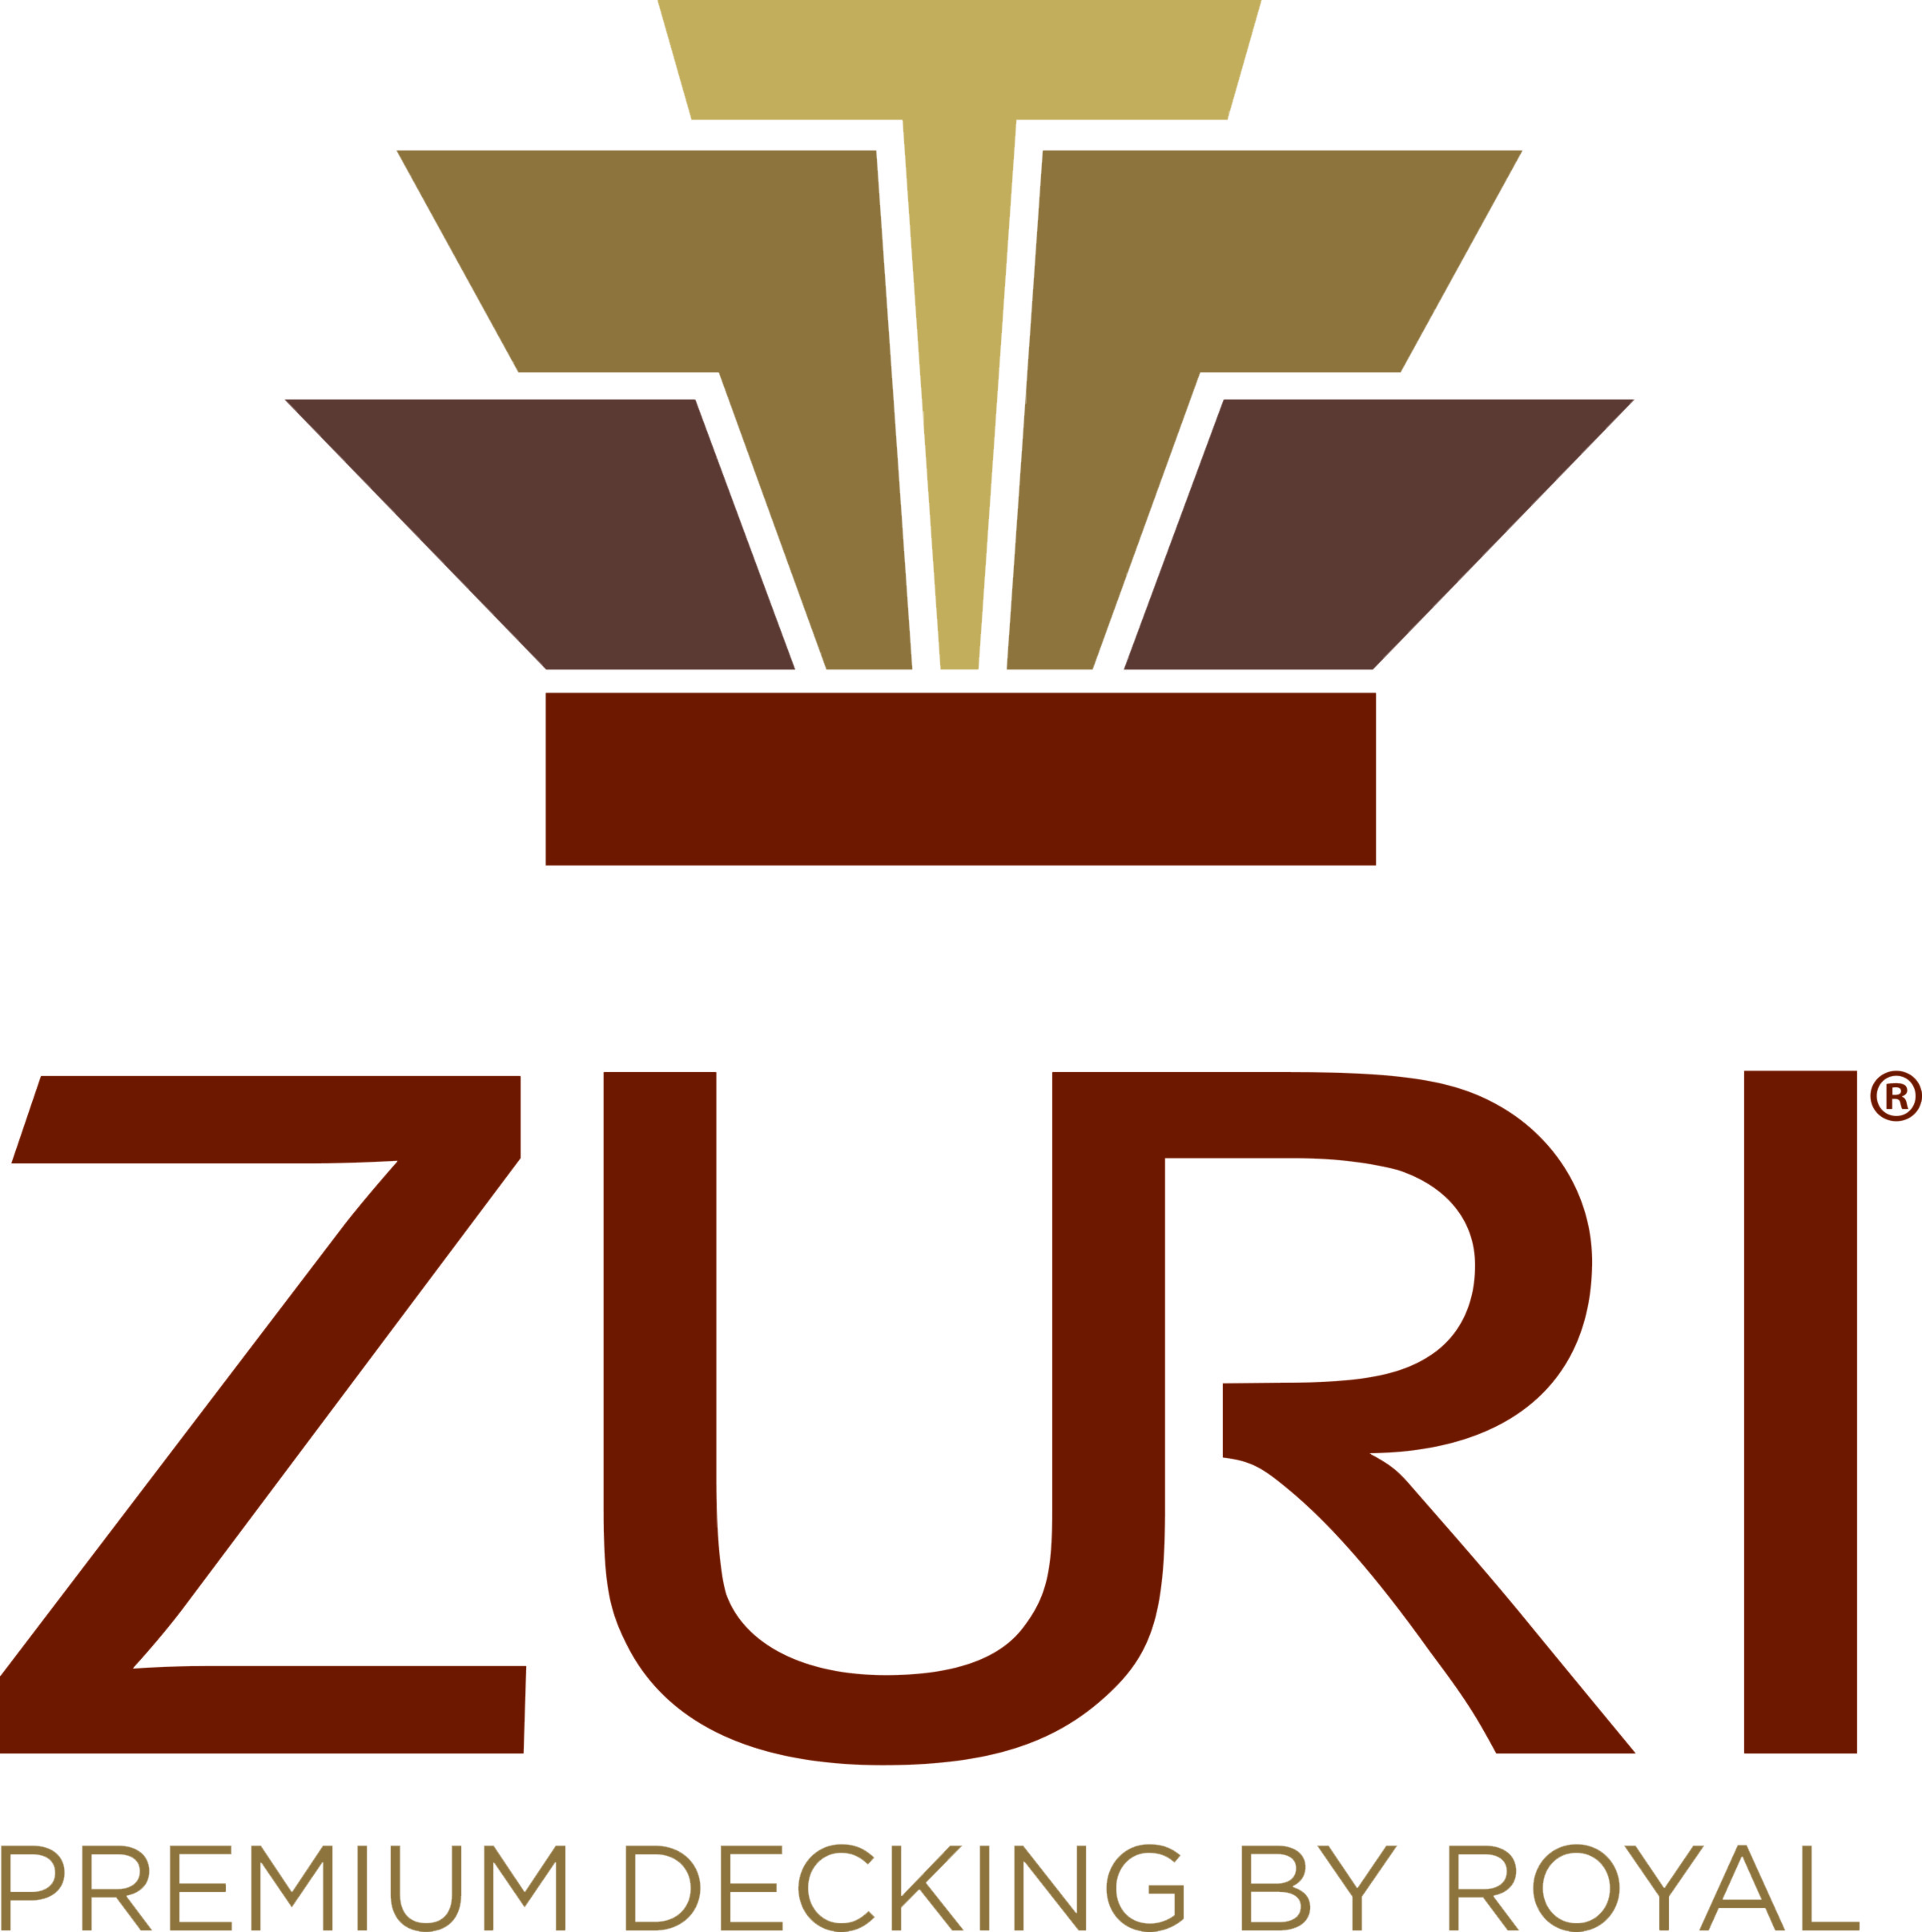 Zuri Decking